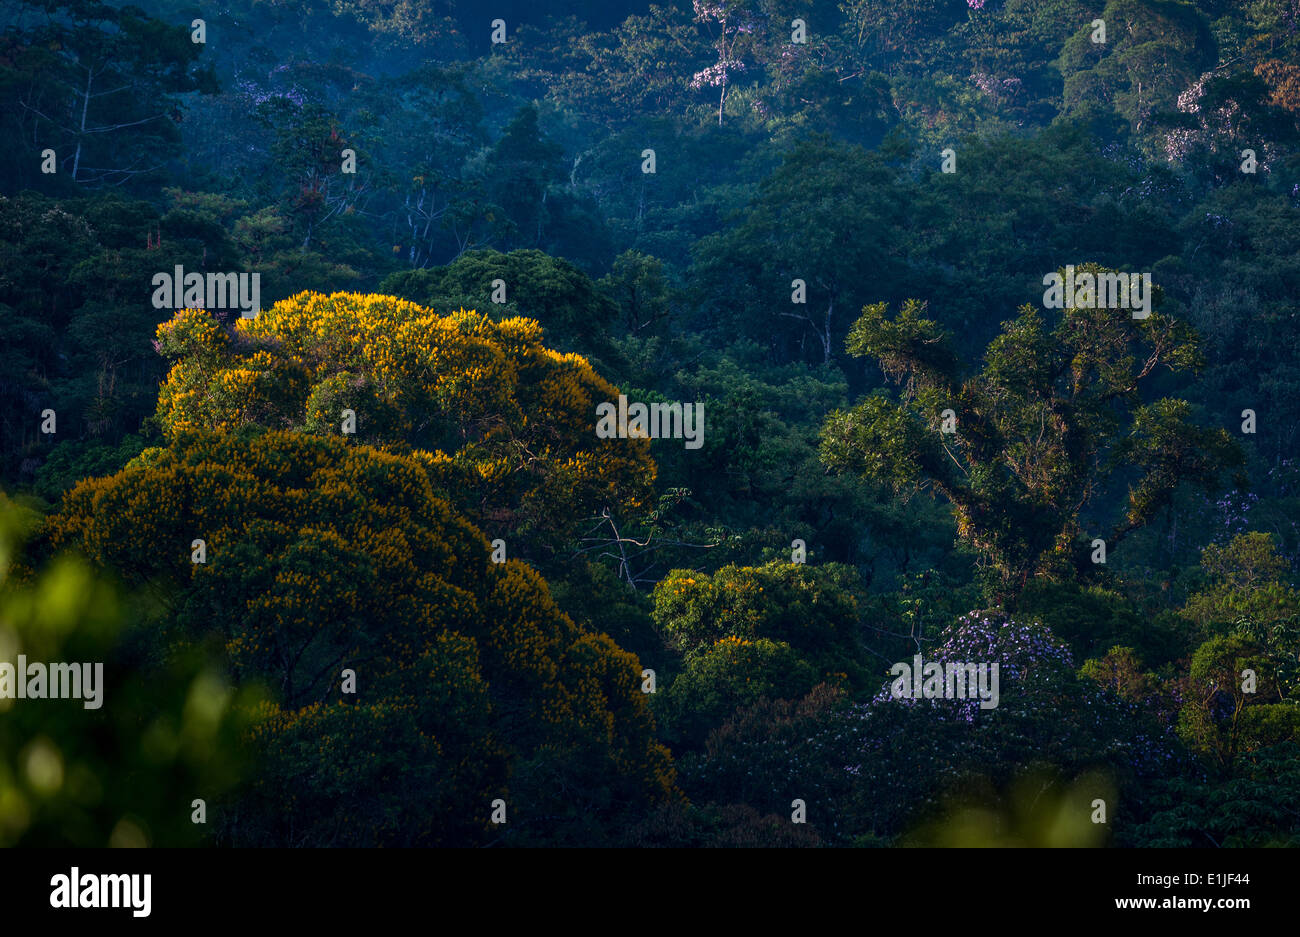 Atlantic Rainforest of Brazil Stock Photo